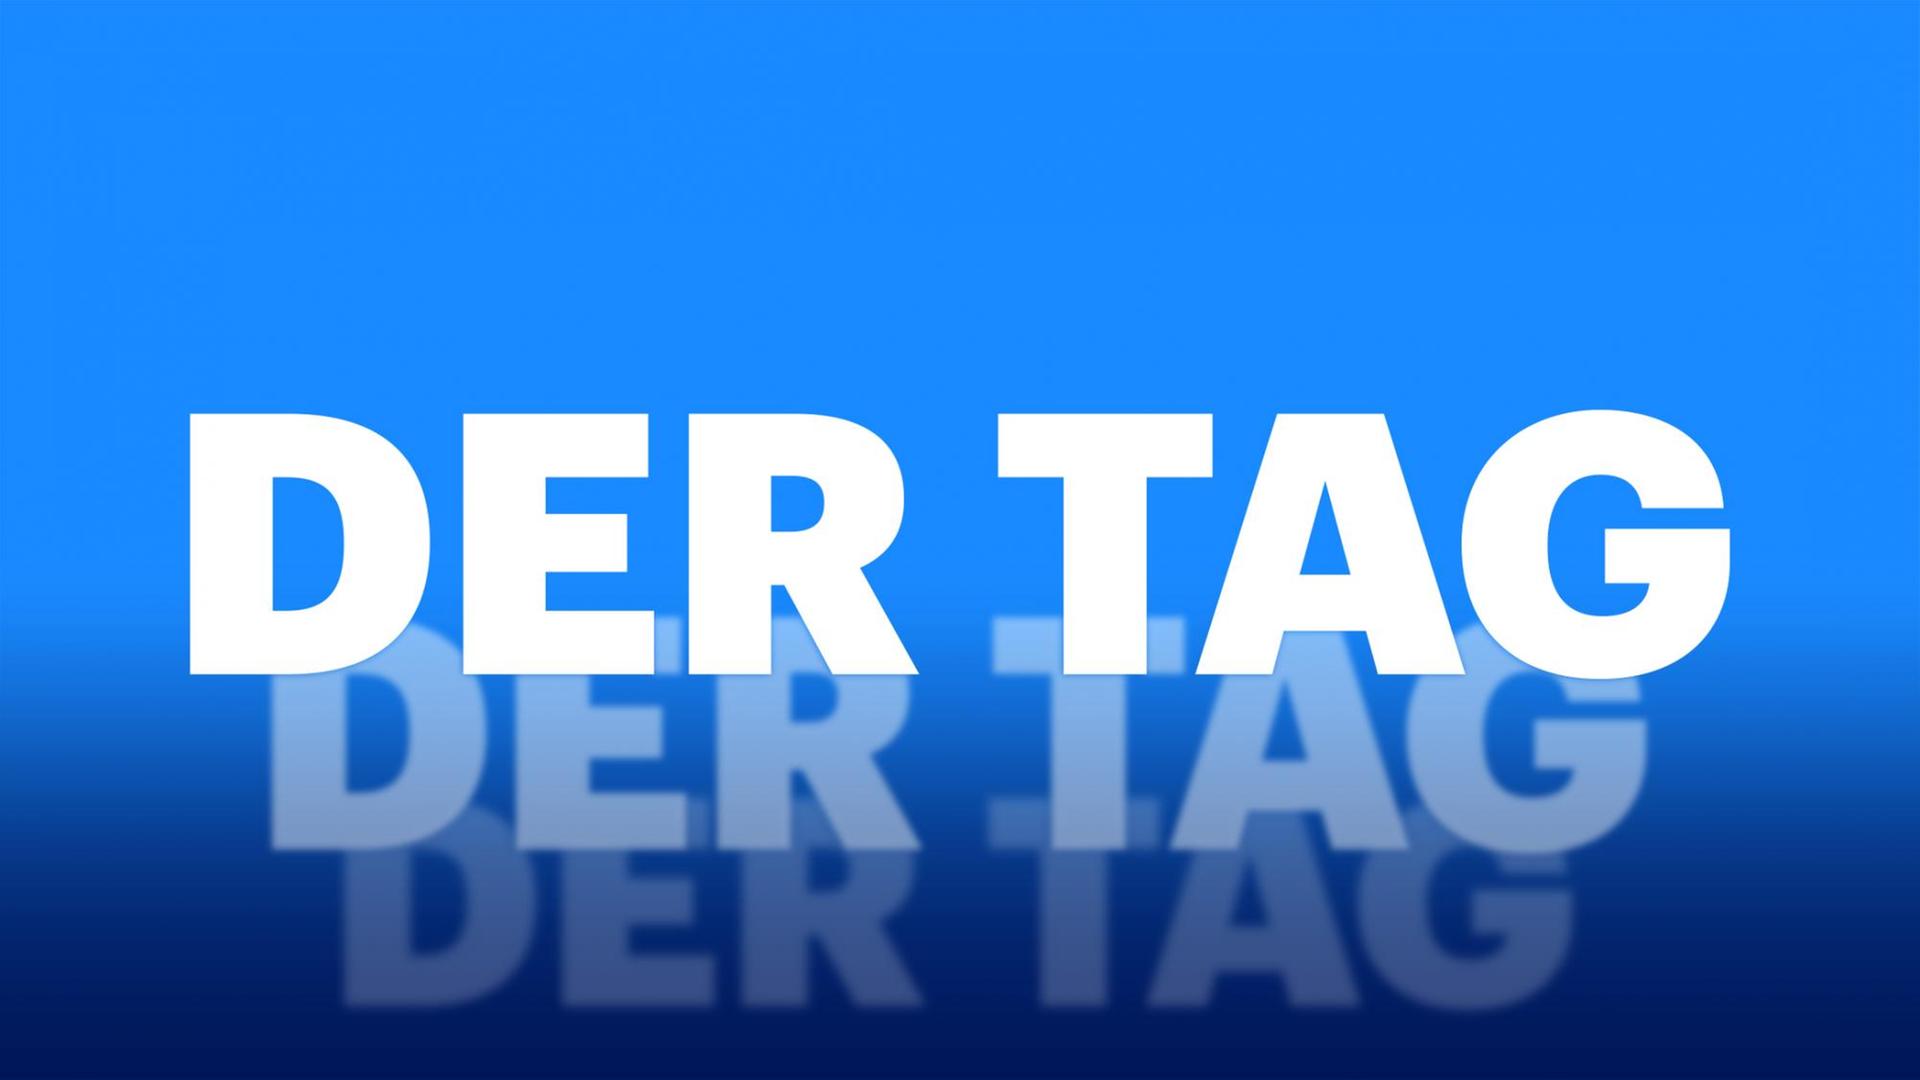 Das Podcastlogo von "Deutschlandfunk - Der Tag" zeigt den Schriftzug "Der Tag" in großen weißen Lettern vor blauem Hintergrund. Der Schriftzug wiederholt sich zwei Mal, immer kleiner im Hintergrund.